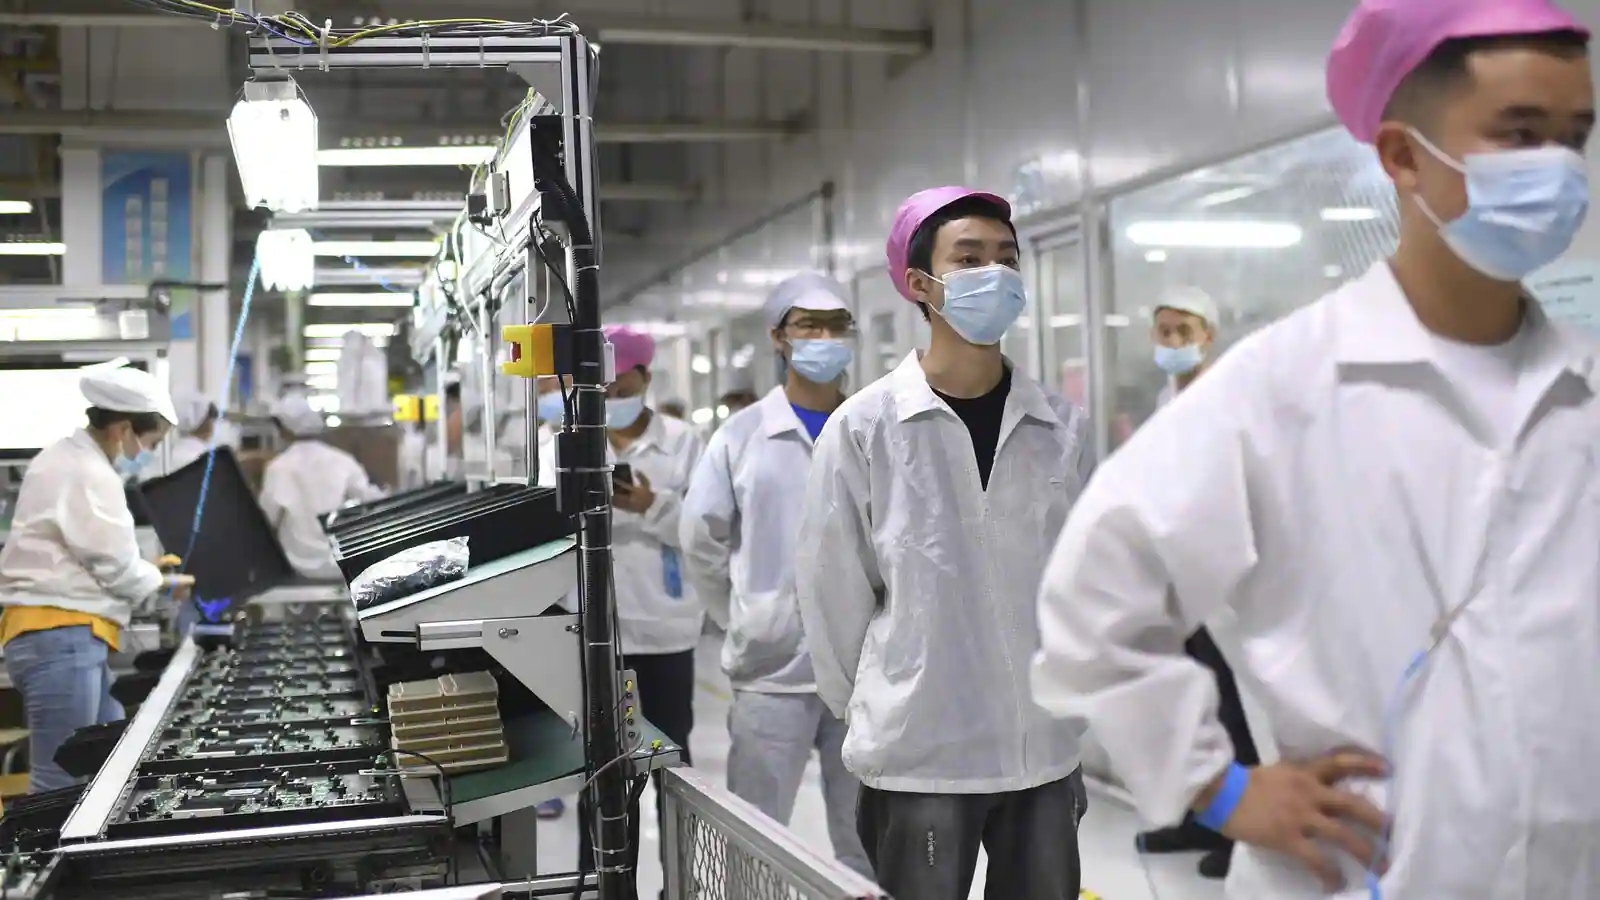 Nhà máy Trịnh Châu đã phải vật lộn với các hạn chế nghiêm ngặt về COVID, khiến công nhân bất bình về điều kiện của nhà máy, khiến doanh thu tháng 11 giảm 11,4% so với cùng kỳ năm ngoái.